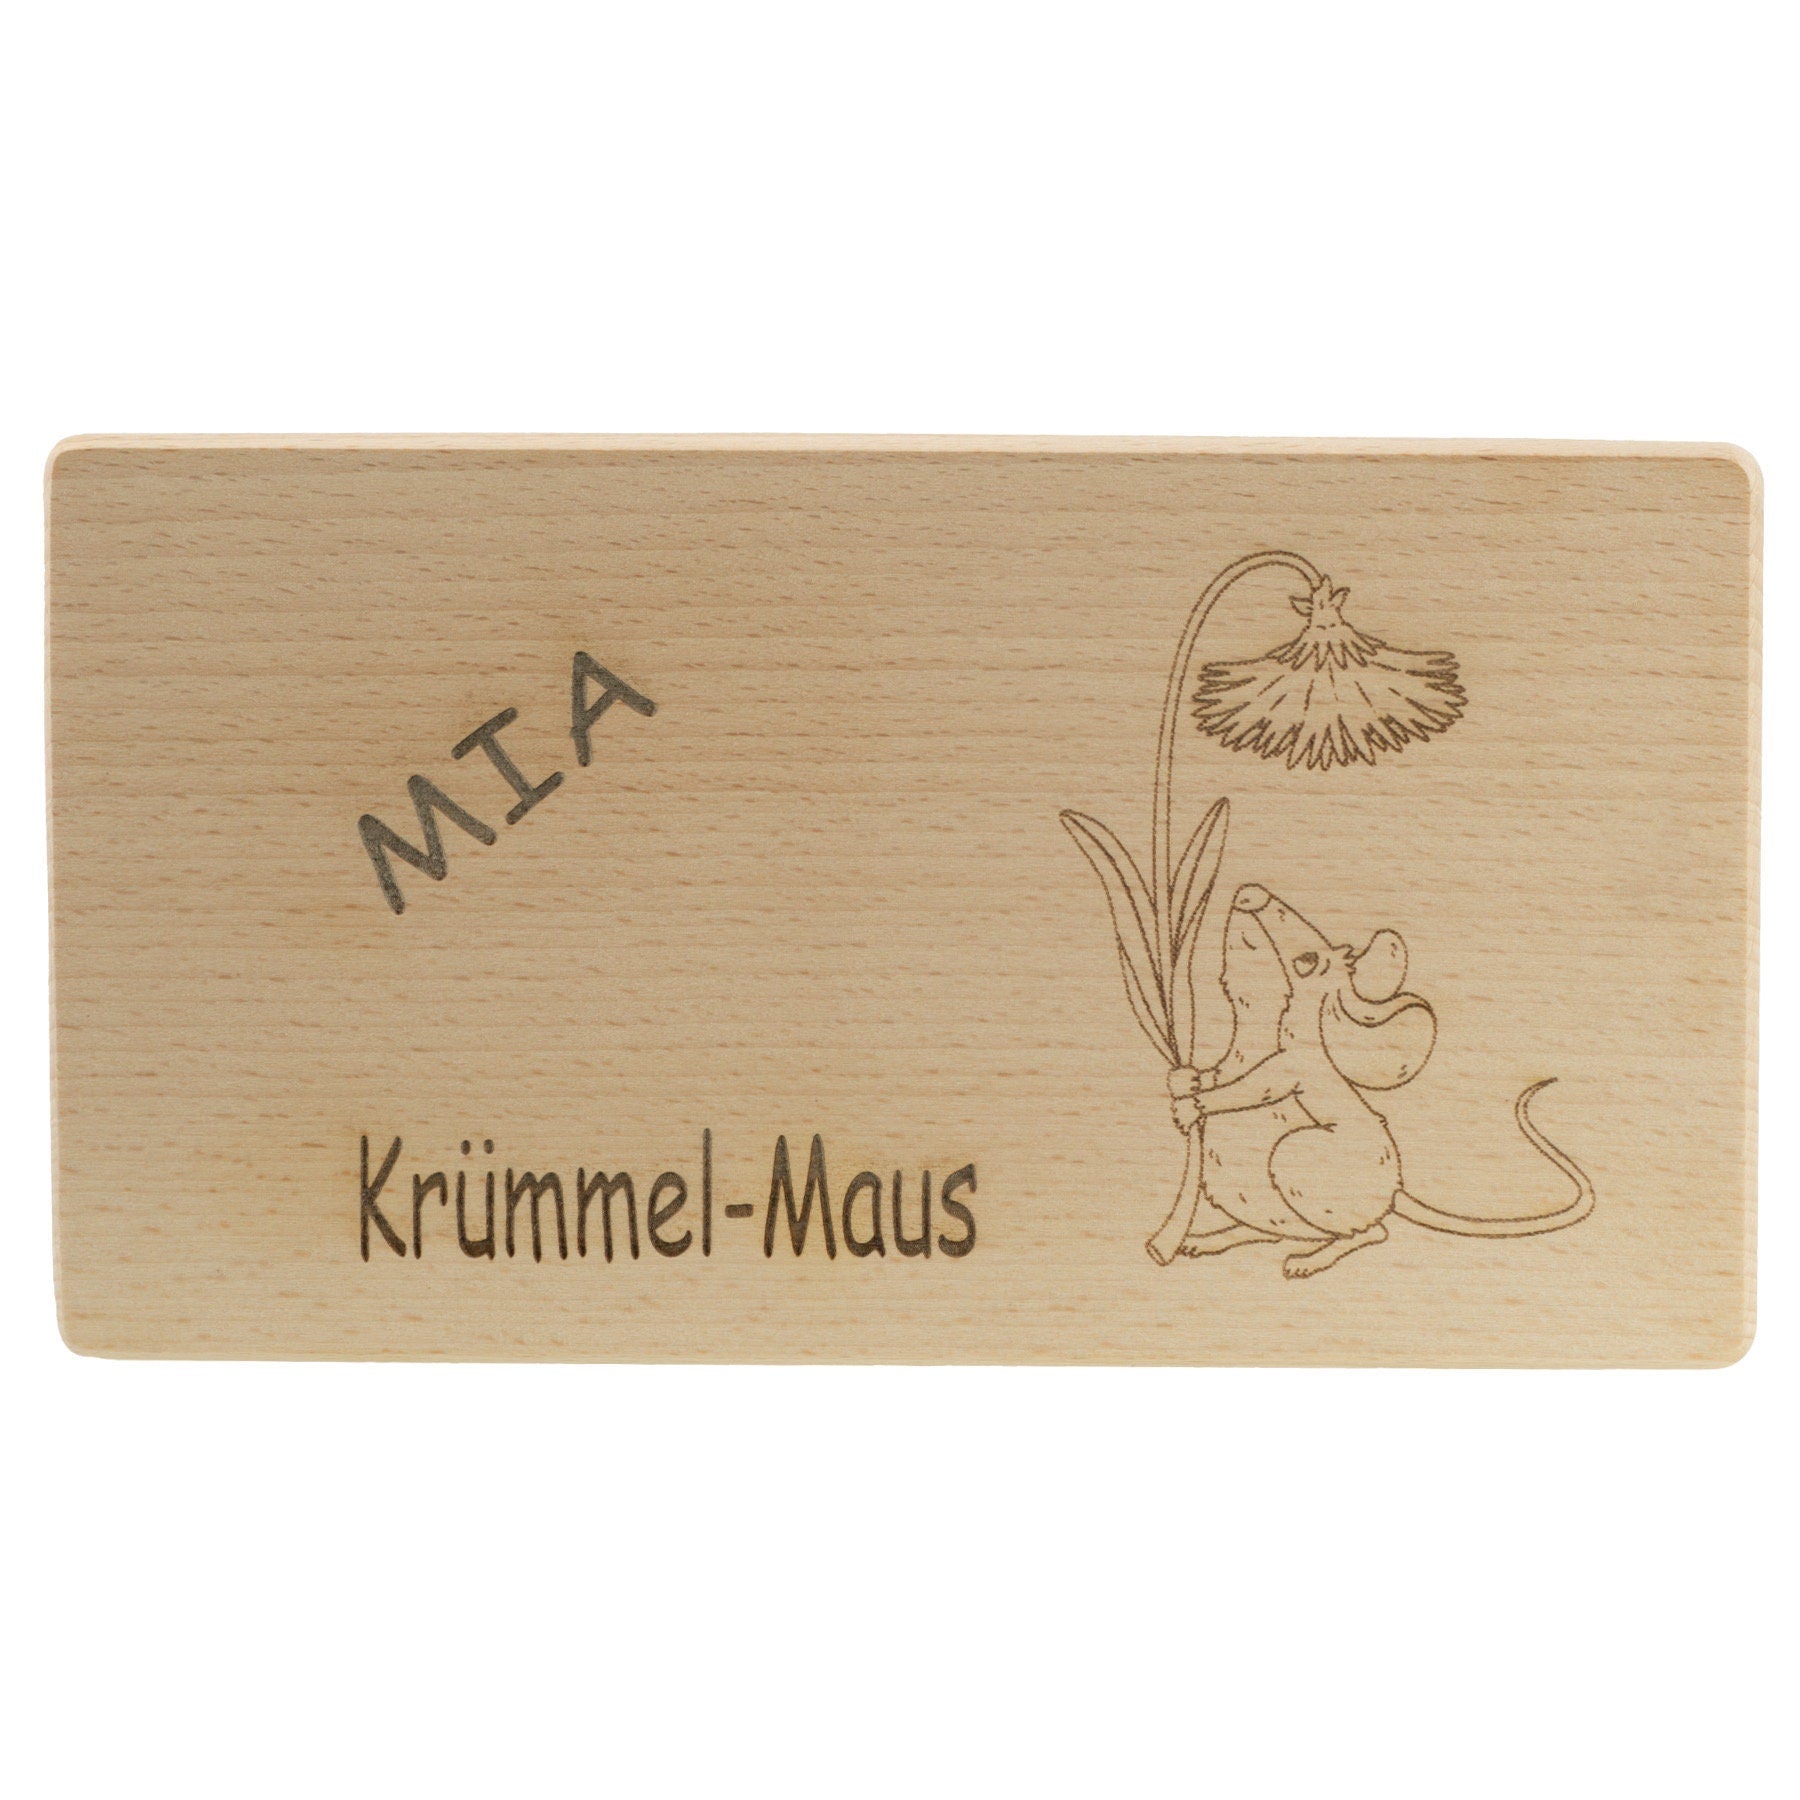 Frühstücksbrettchen Personalisierung Maus mit Beschriftung Holz Laser mit Name Bild Holz Brett Geschenk  220 x 120 x 10 mm (LxBxH)